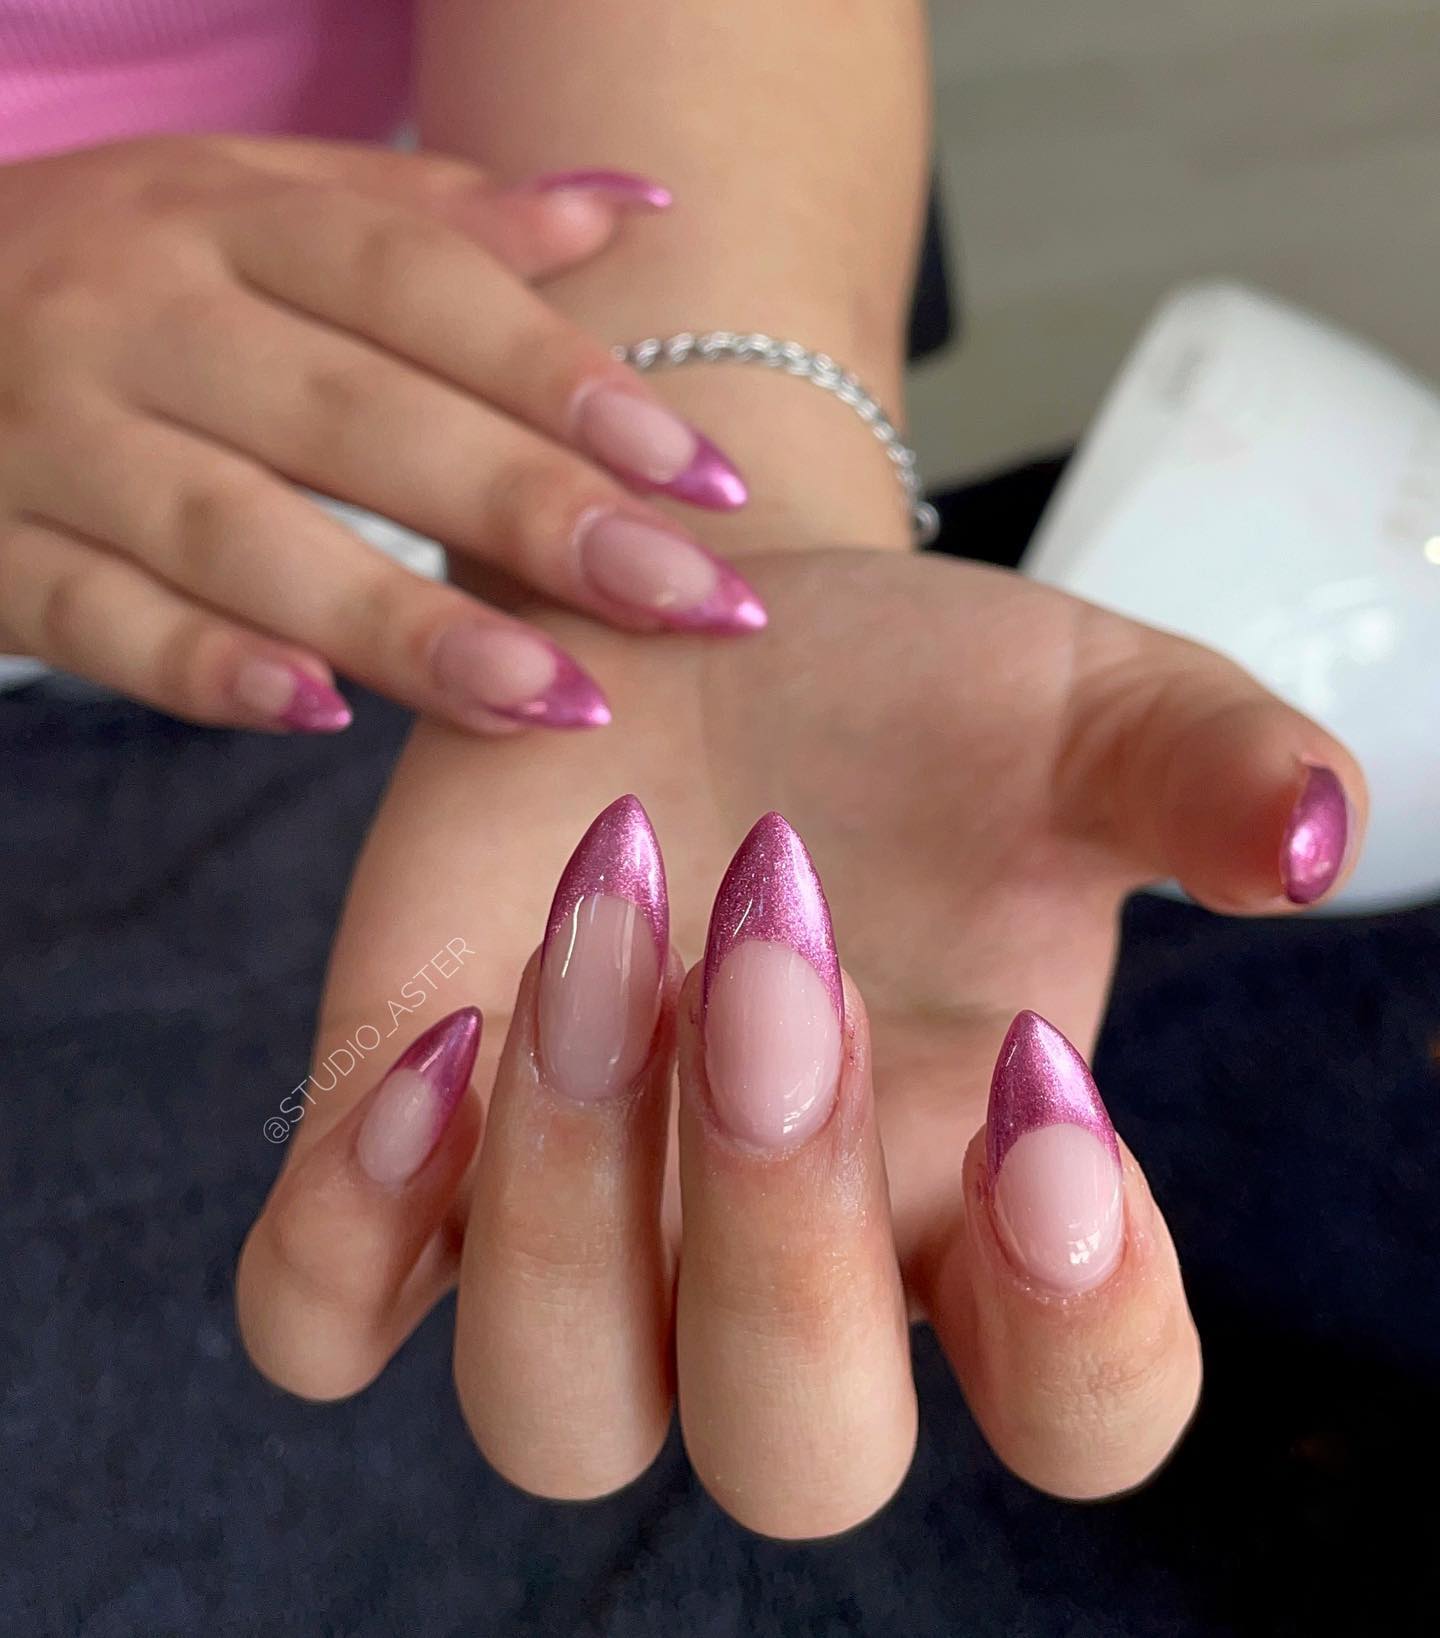 Como clásico, ¡la manicura francesa siempre está lista para dejar tus uñas hermosas! Por lo tanto, también puedes conseguir este magnífico aspecto con puntas cromadas de color rosa.